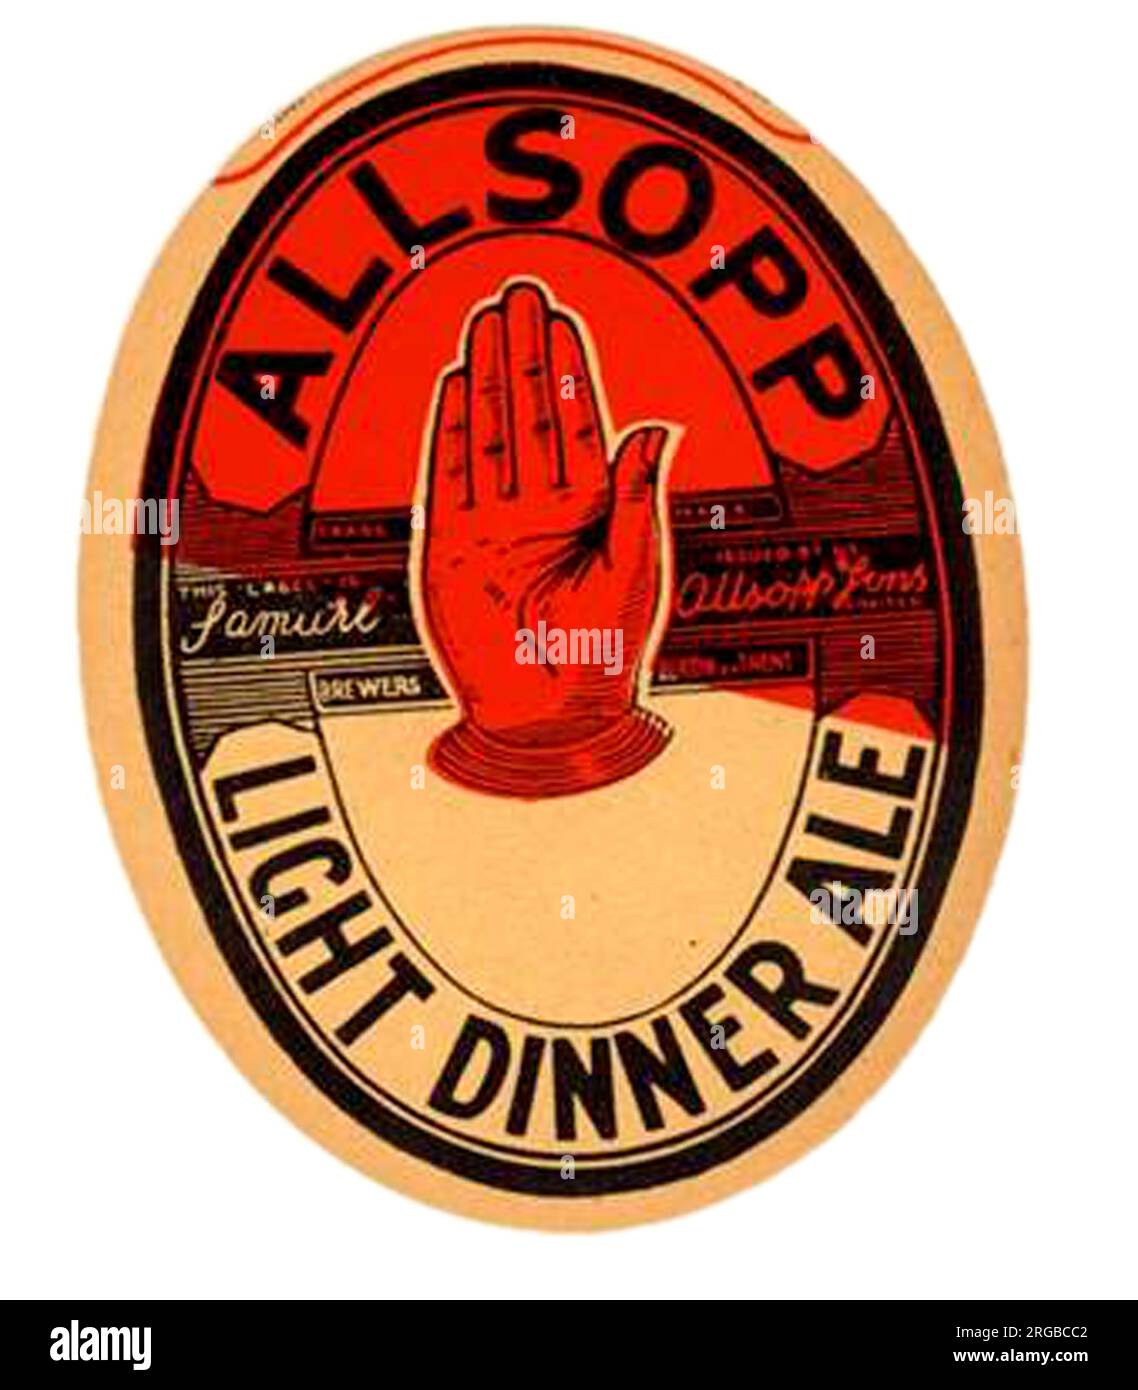 Allsopp Light Dinner Ale Stock Photo